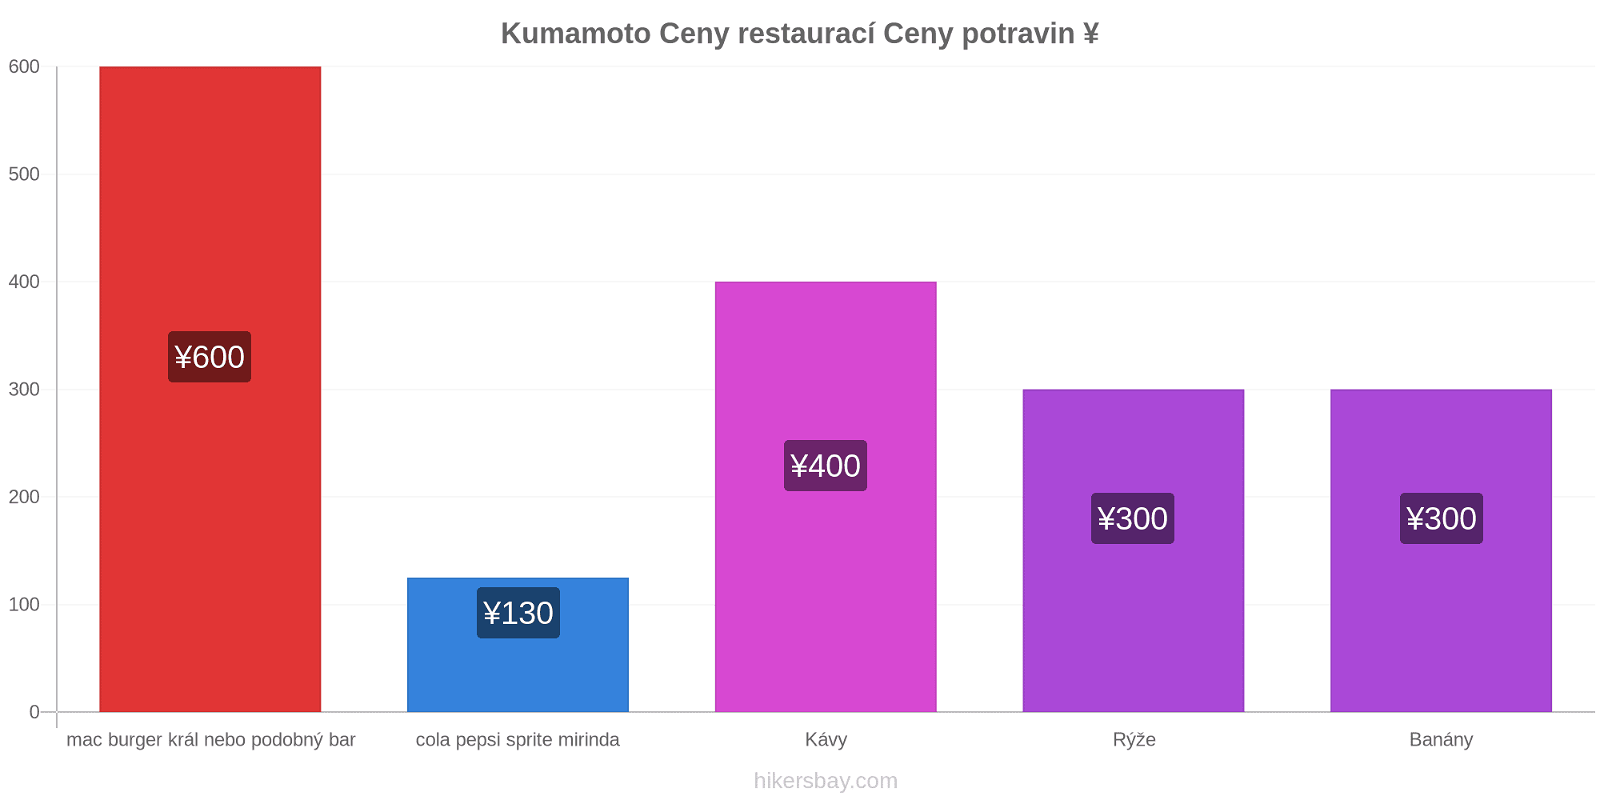 Kumamoto změny cen hikersbay.com